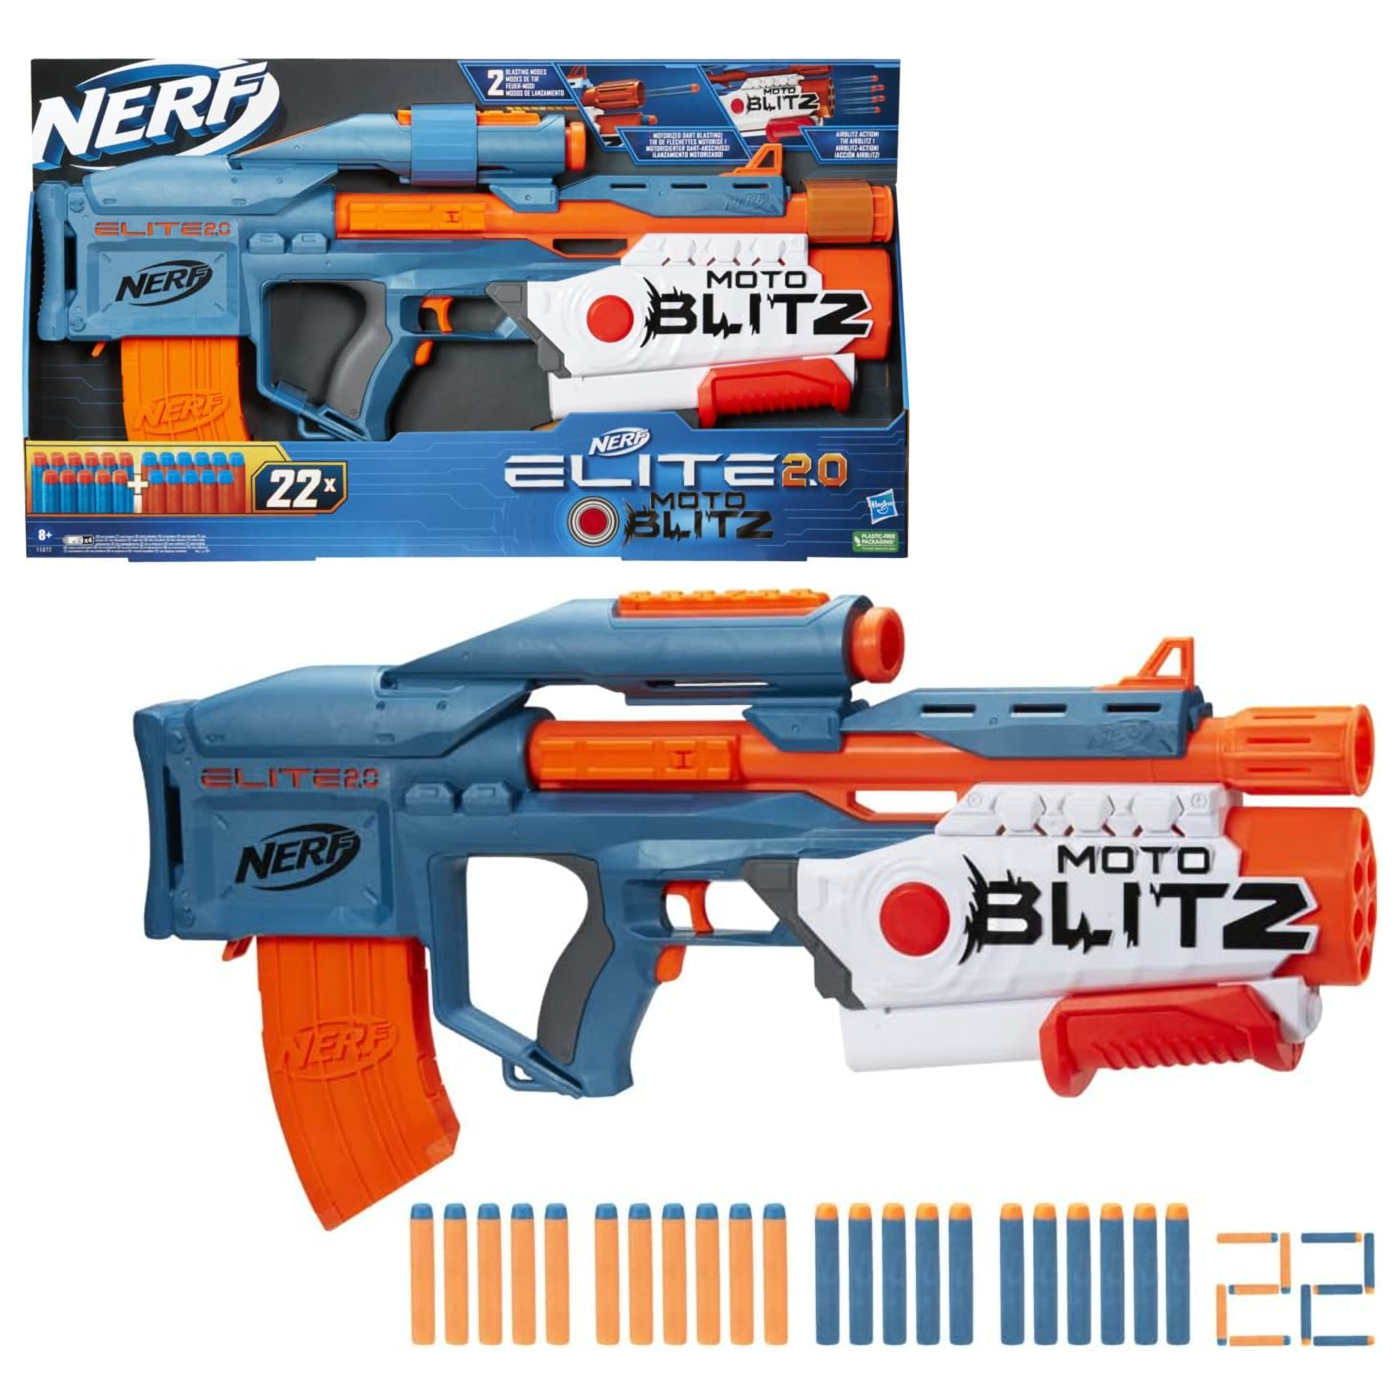 NERF Blaster Moto Blitz 2.0 Wyrzutnia strzałek automat + 22 strzałki